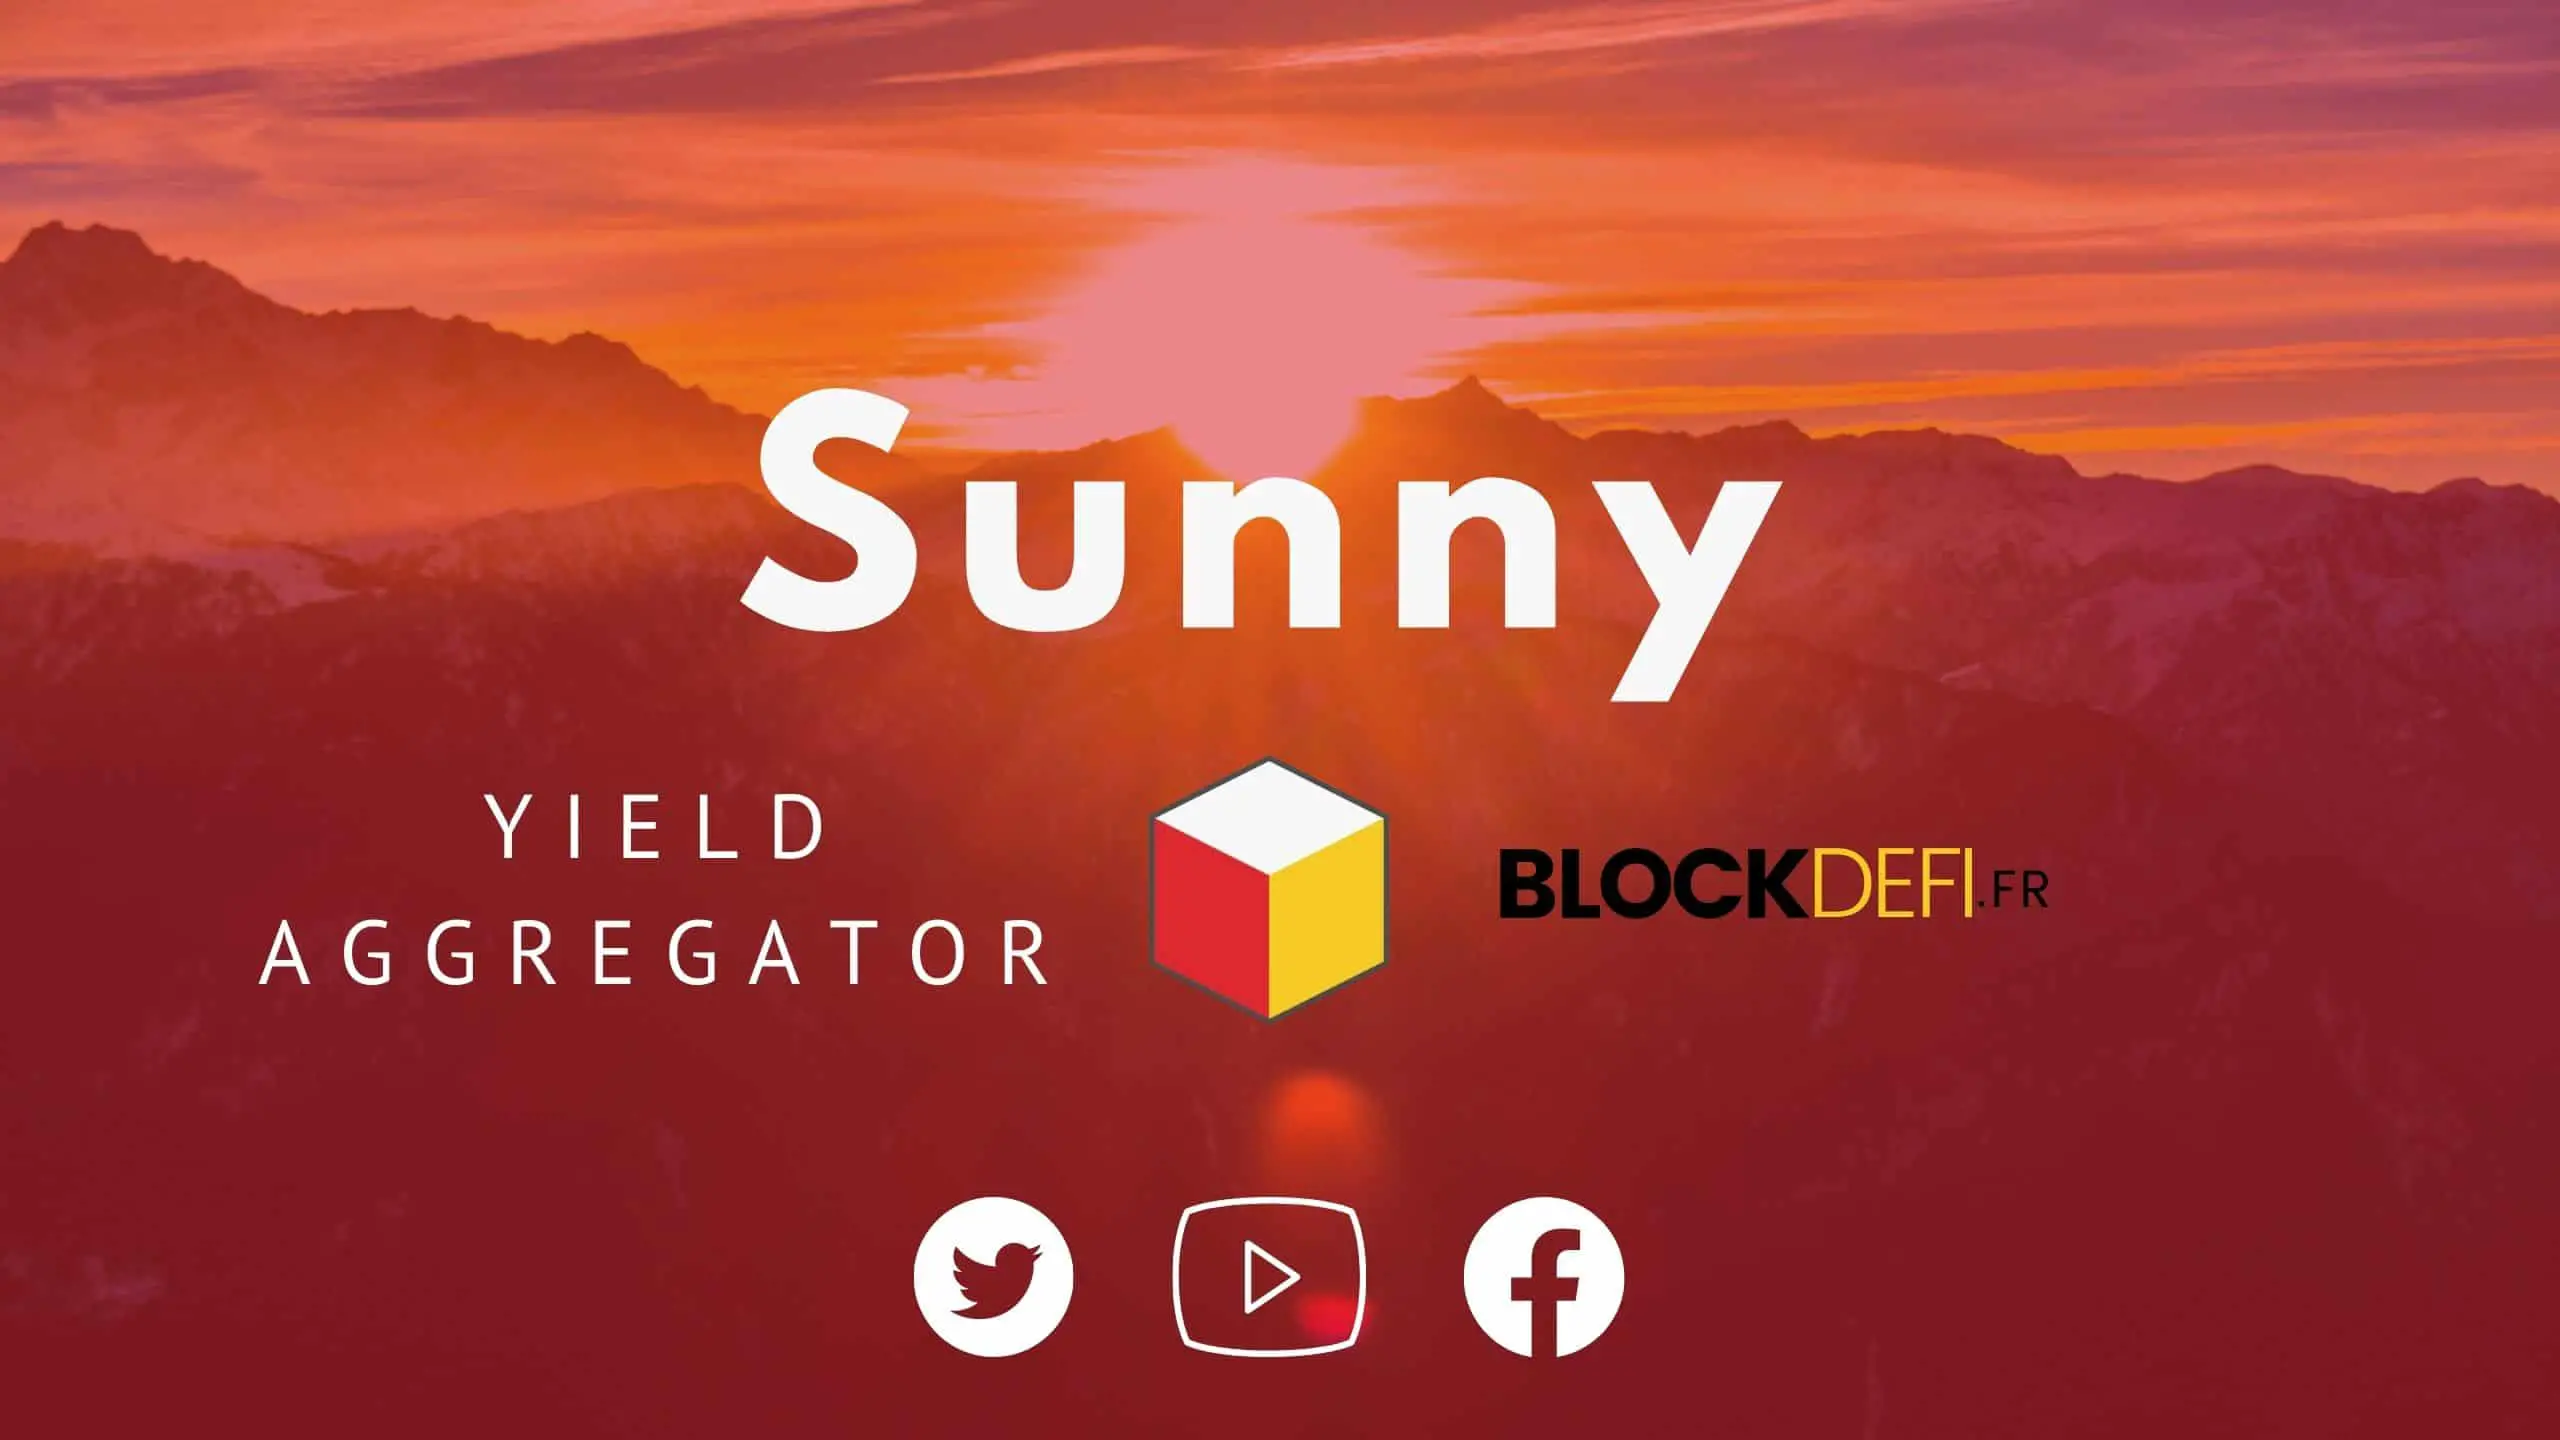 Sunny-Yield-aggregator-solana